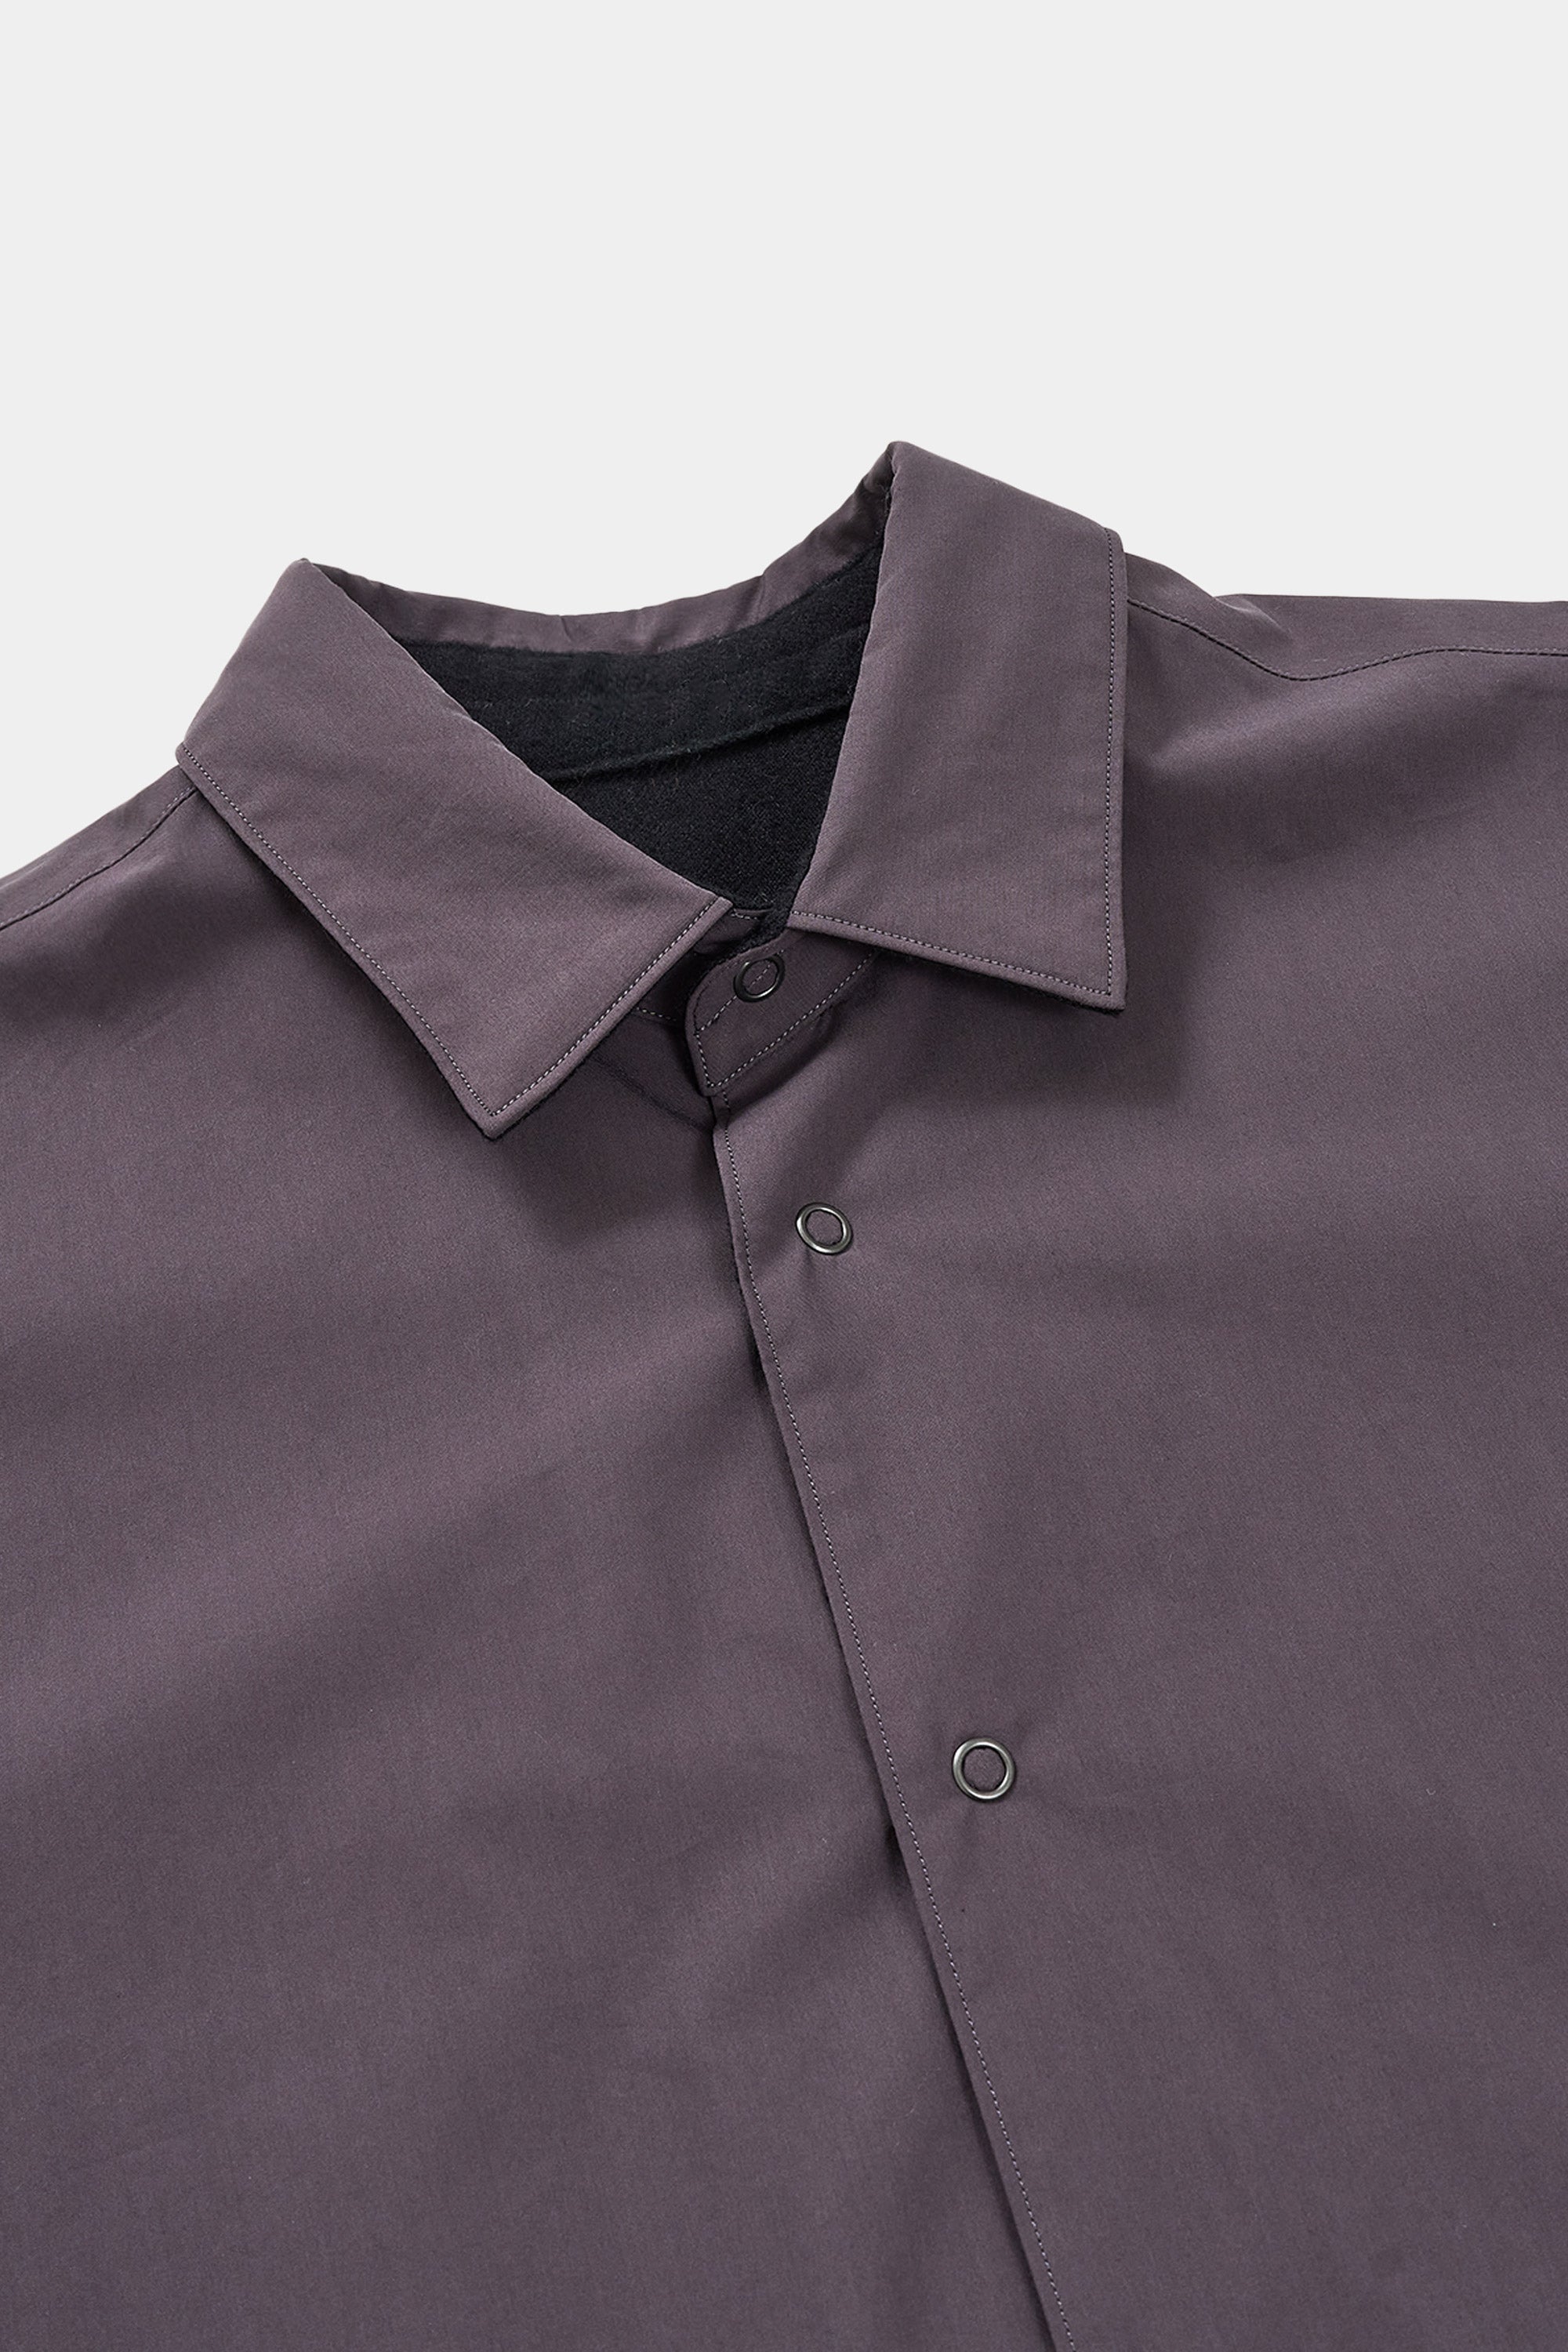 Organic Cotton/ Polyester Weather Reversible Shirt, Purplish Brown